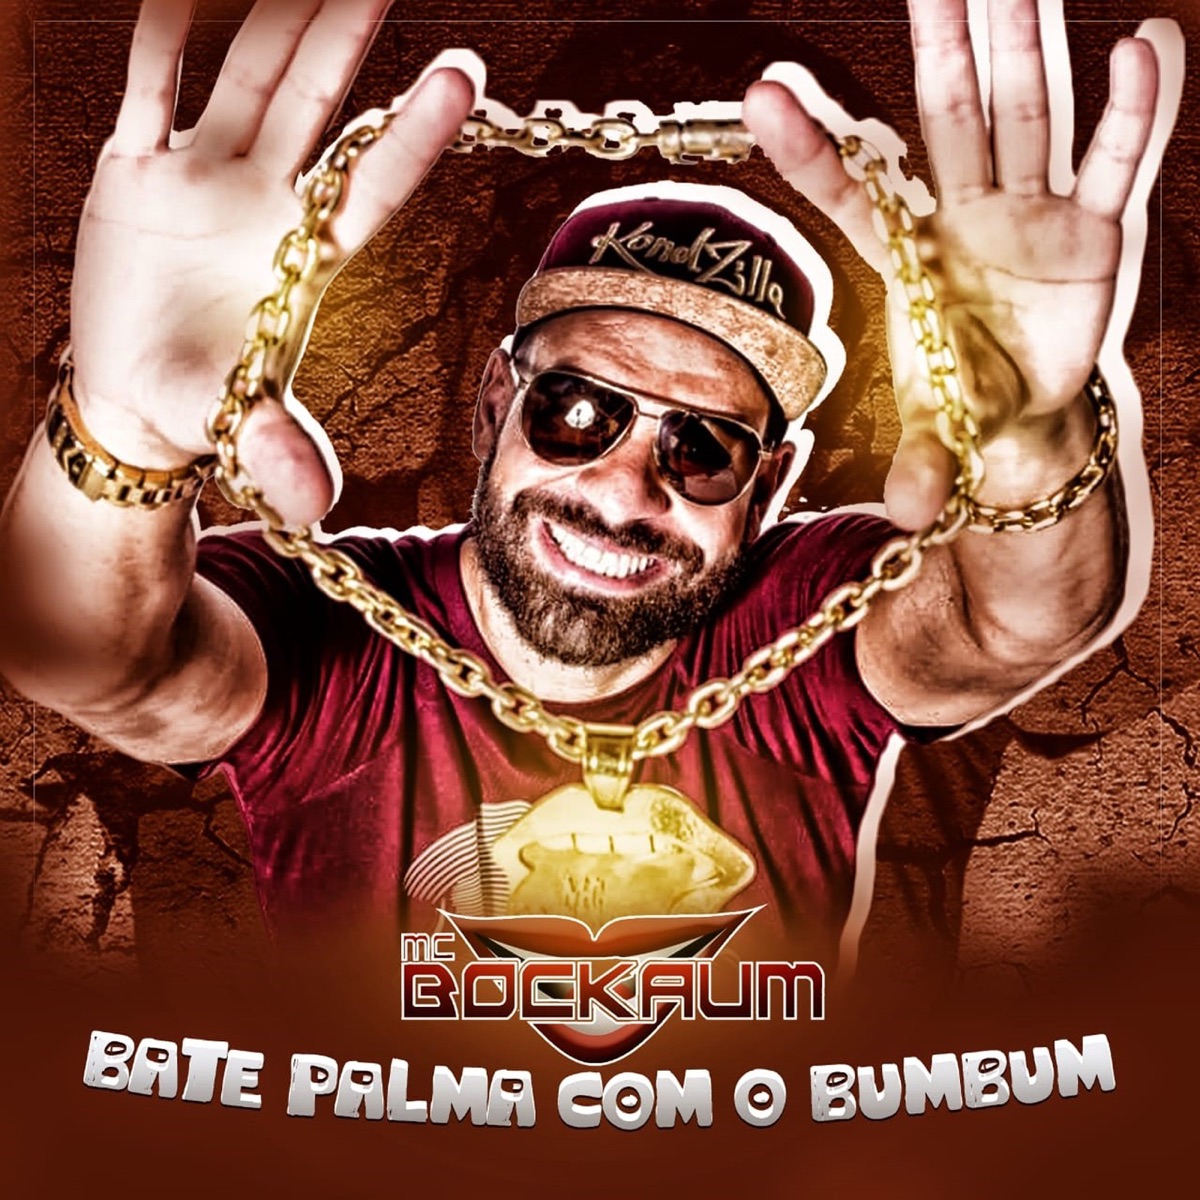 Bate Palma Com o Bumbum - Single - Album by Mc Bockaum - Apple Music